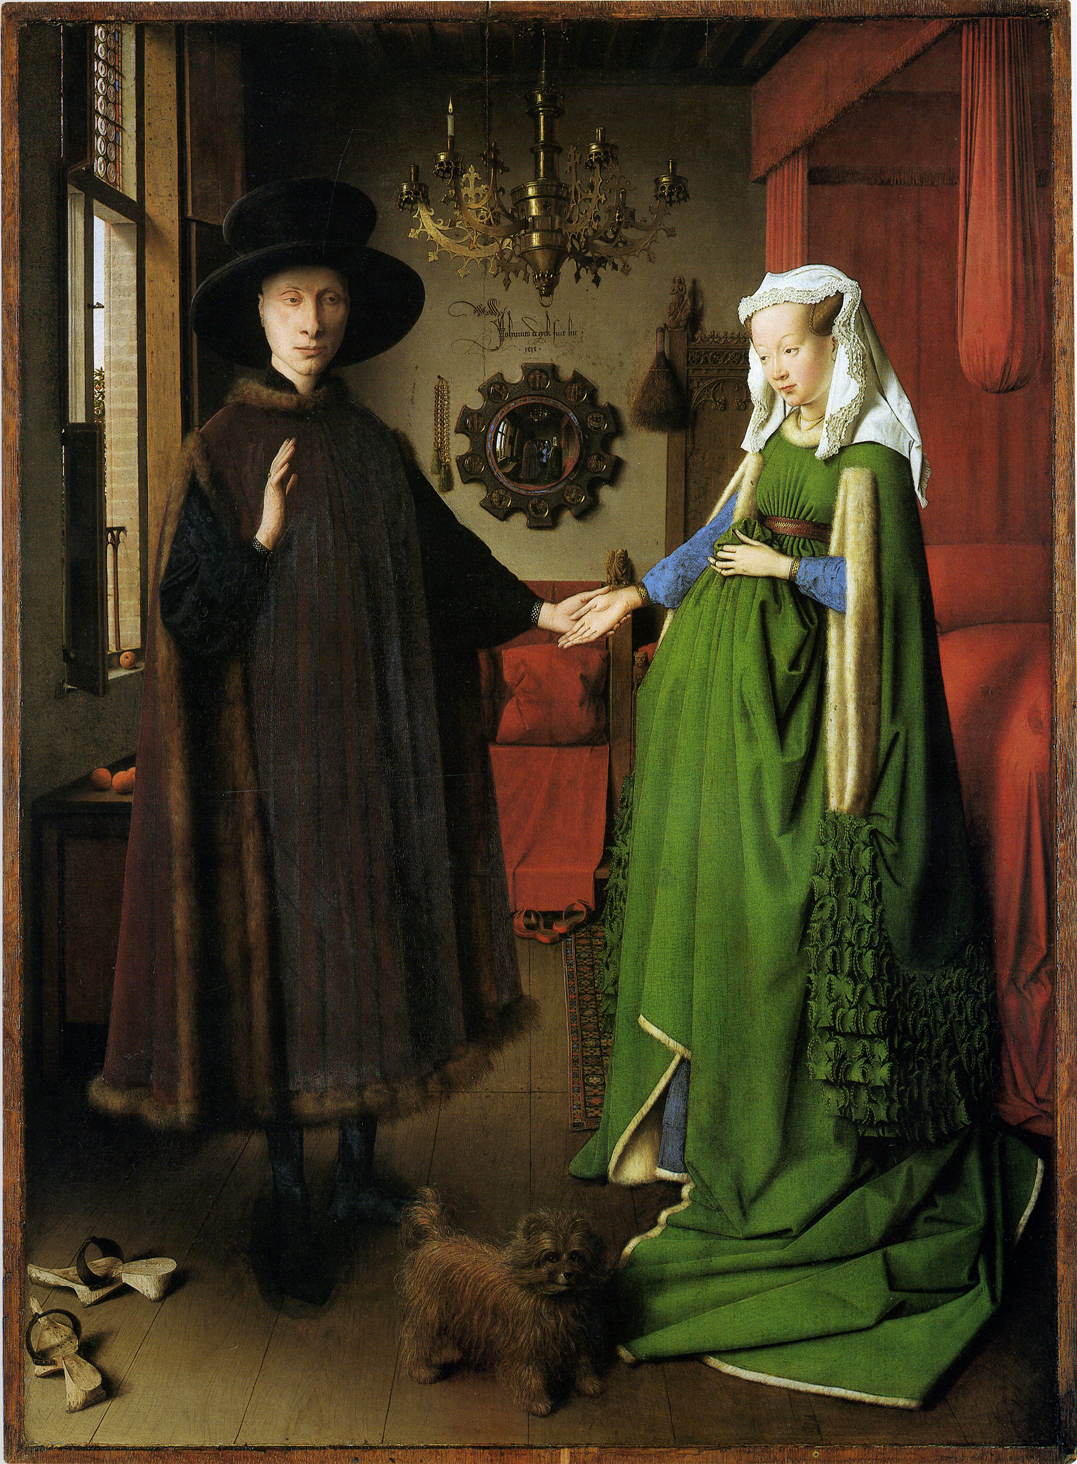 The Arnolfini Portrait by Flemish painter Jan van Eyck